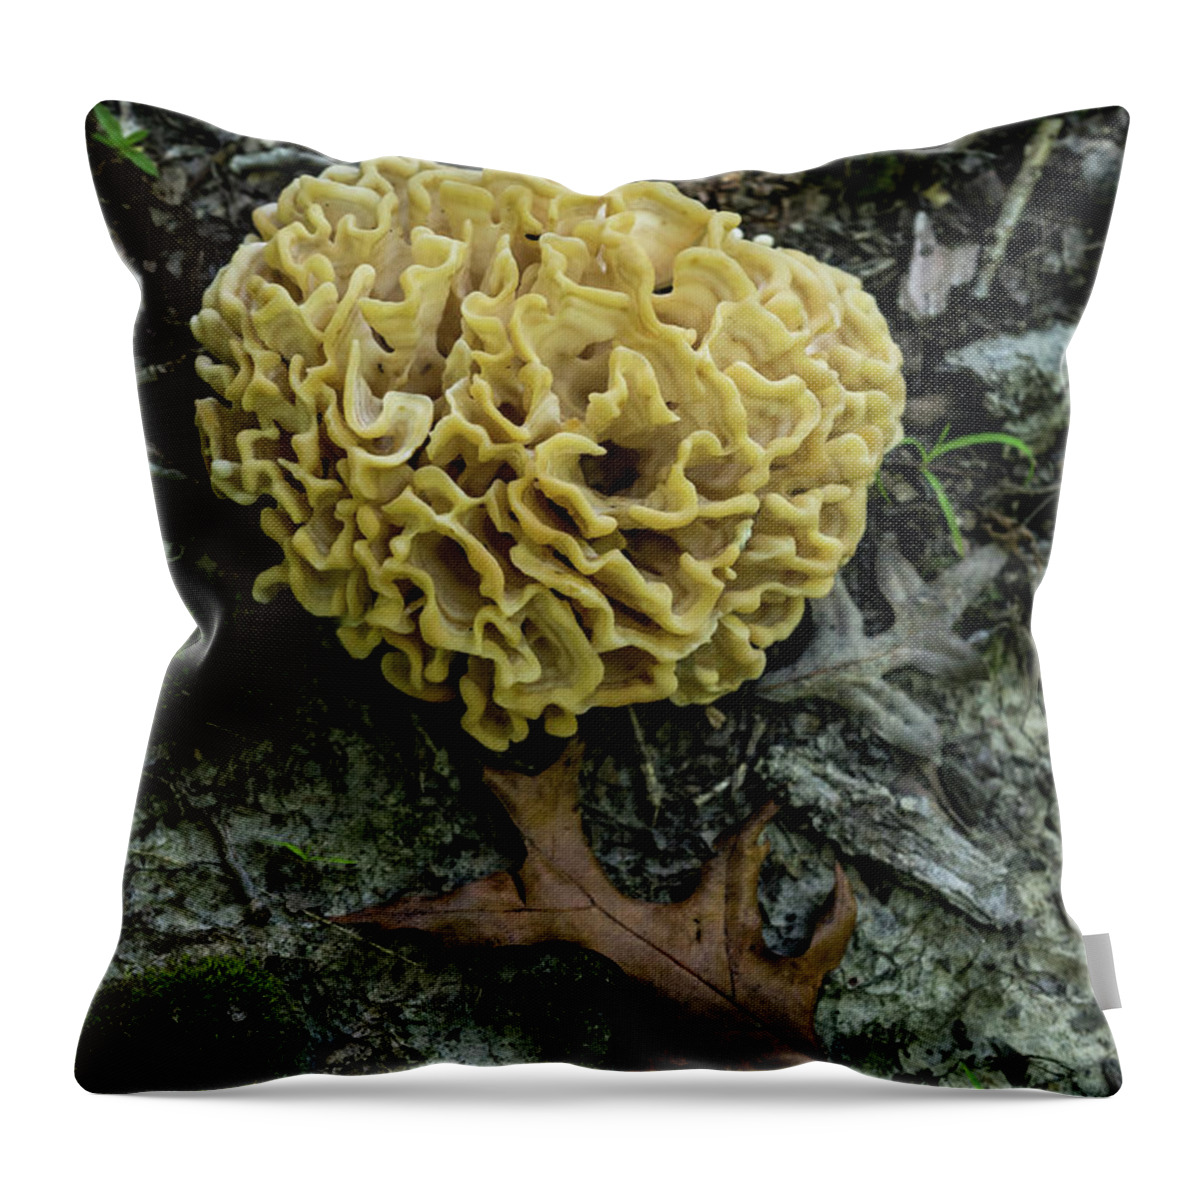 Brain Throw Pillow featuring the photograph Brain or Cauliflower Fungus by Douglas Barnett